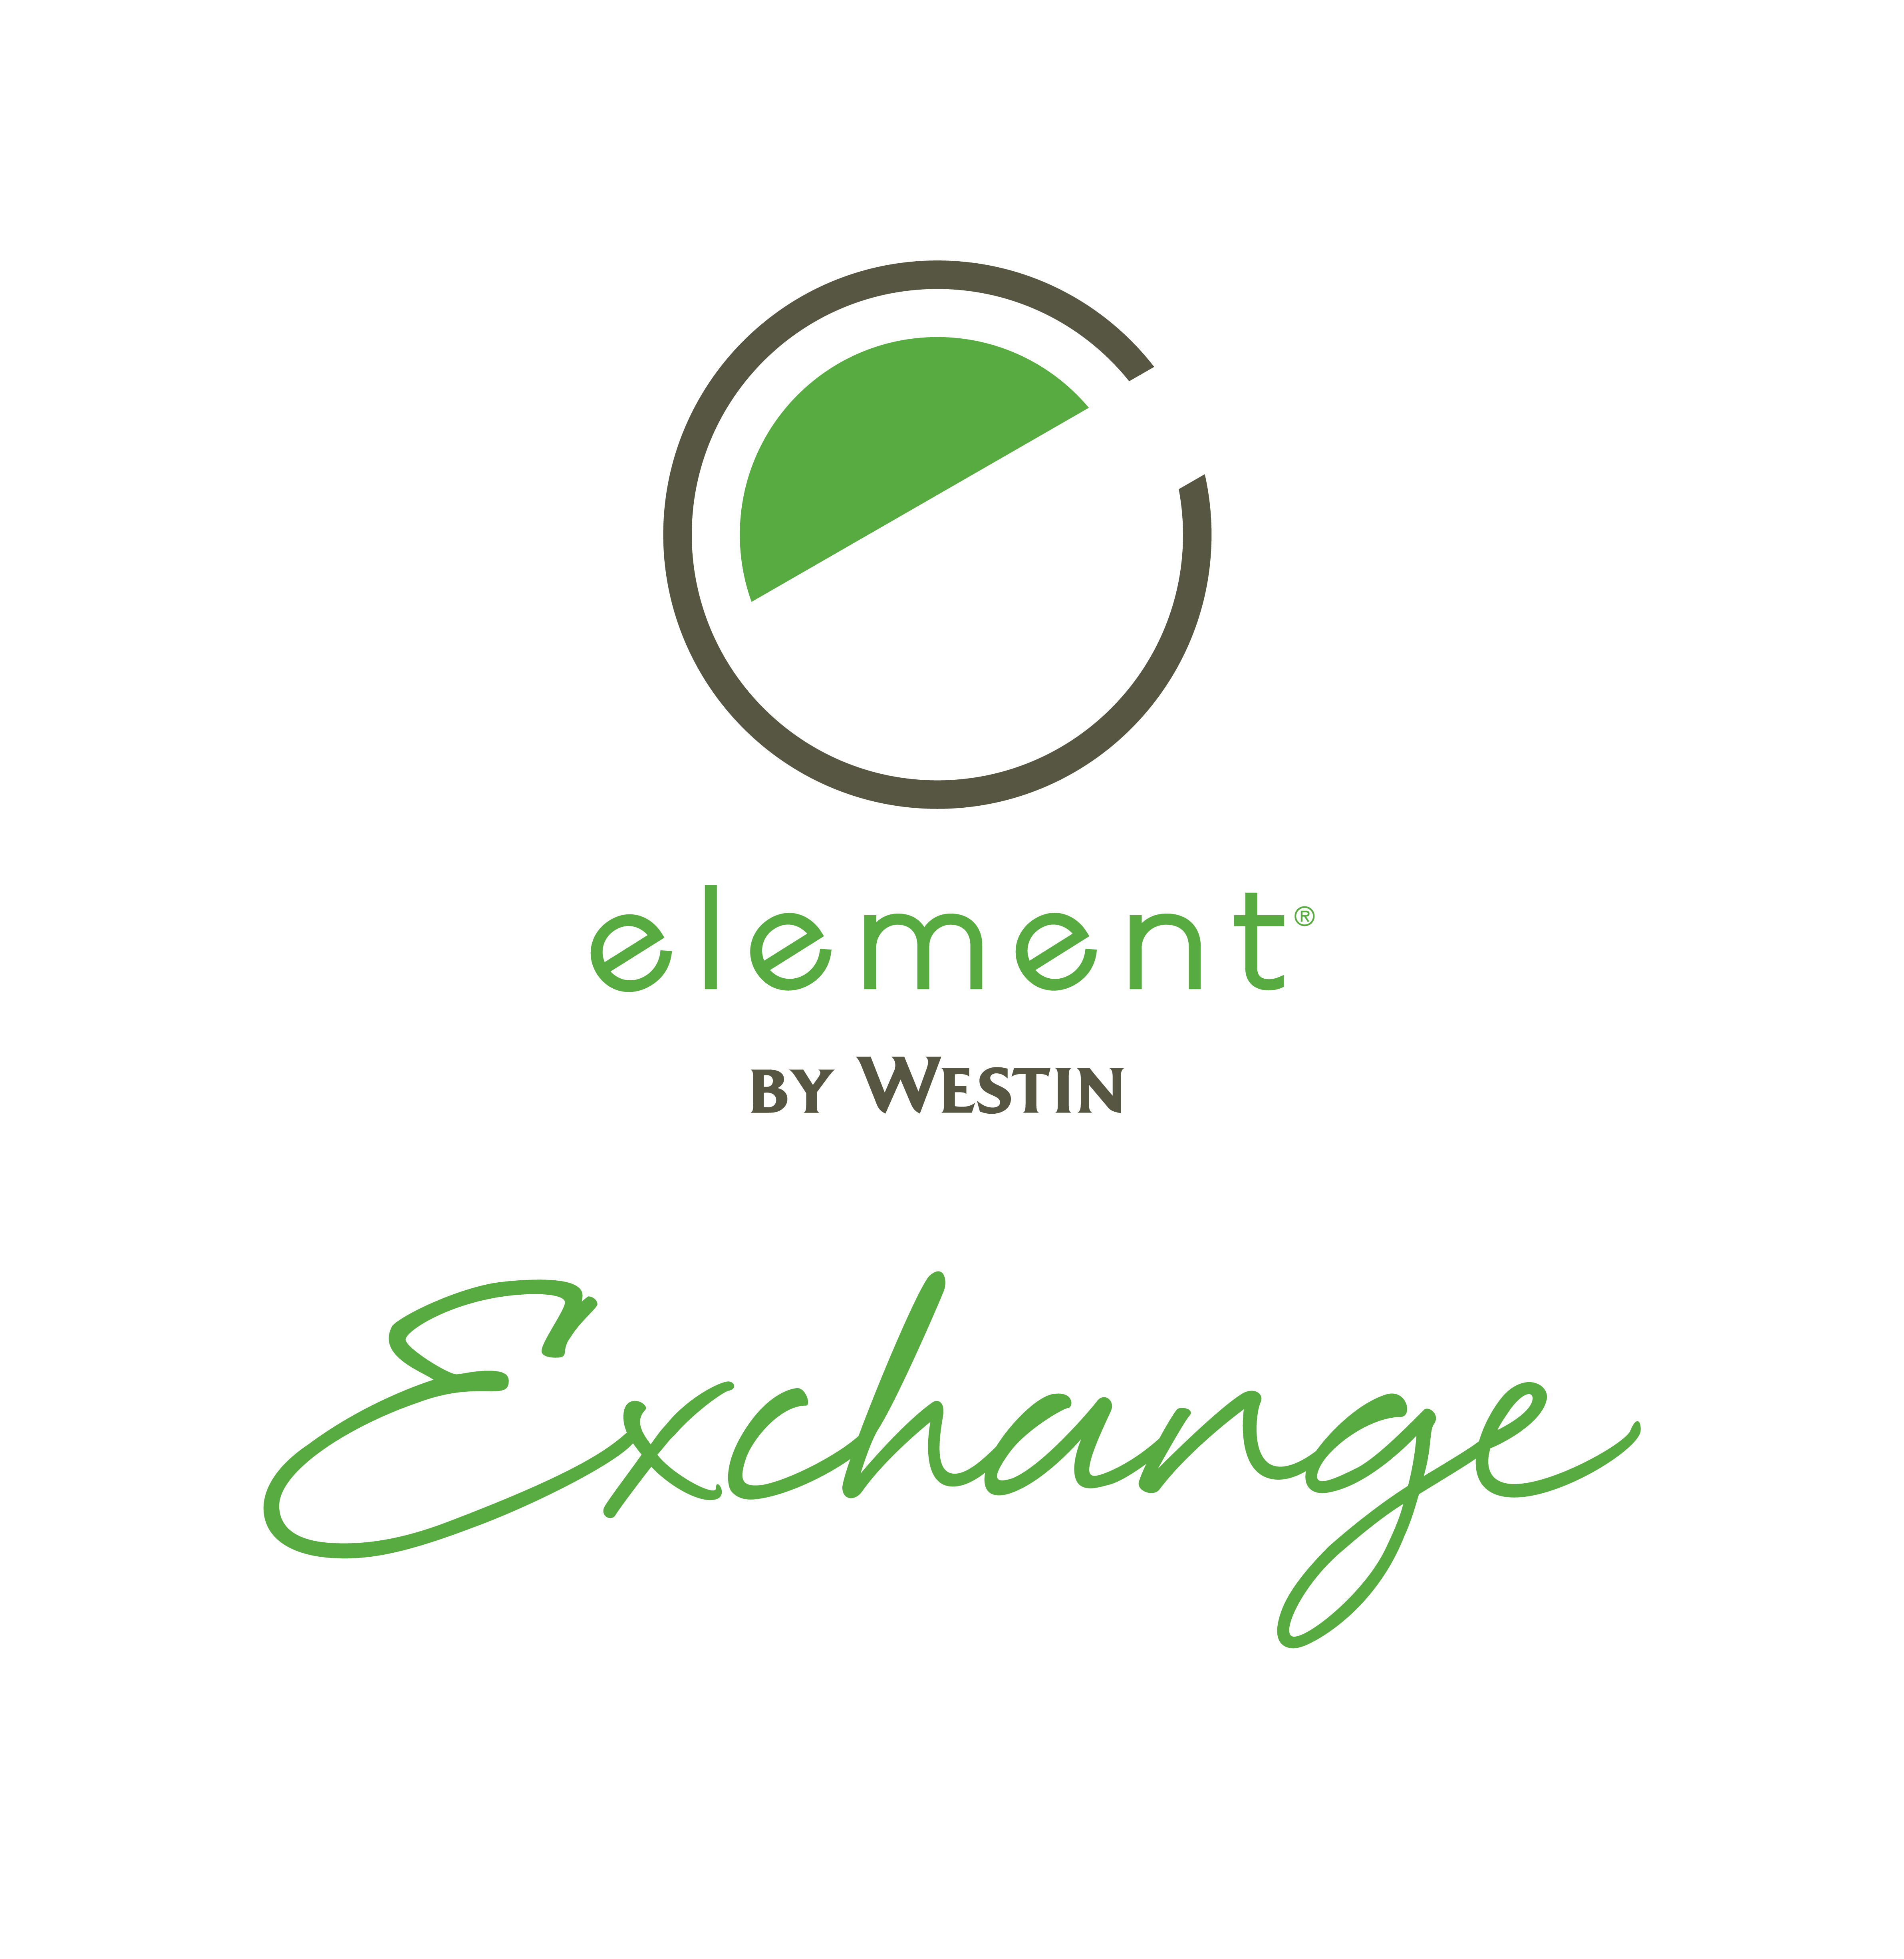 Element Hotel Logo - Element Exchange [08/25/17]